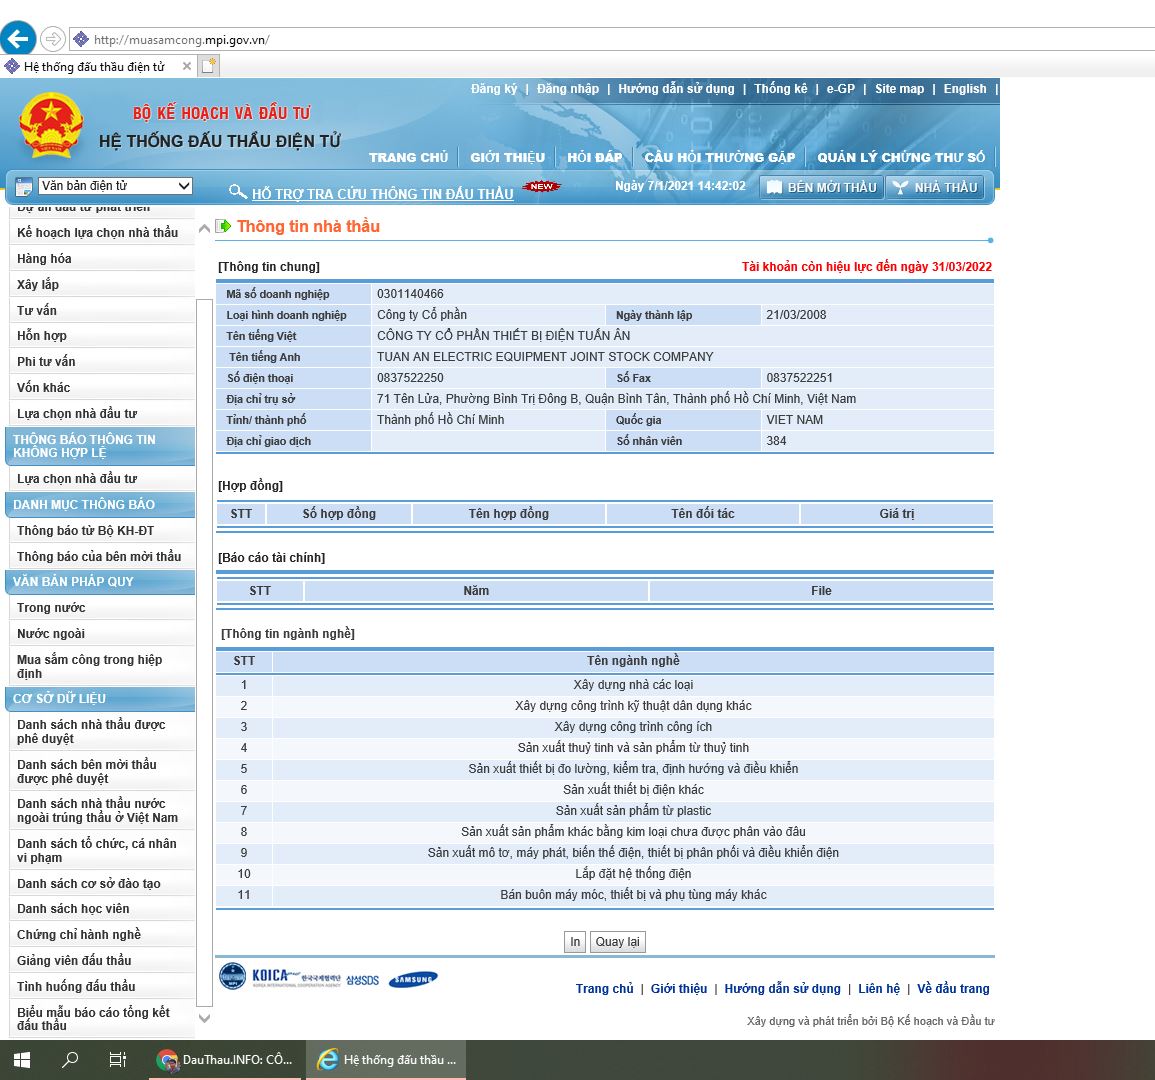 Muasamcong - Sử dụng Internet Explorer xem thông tin nhà thầu